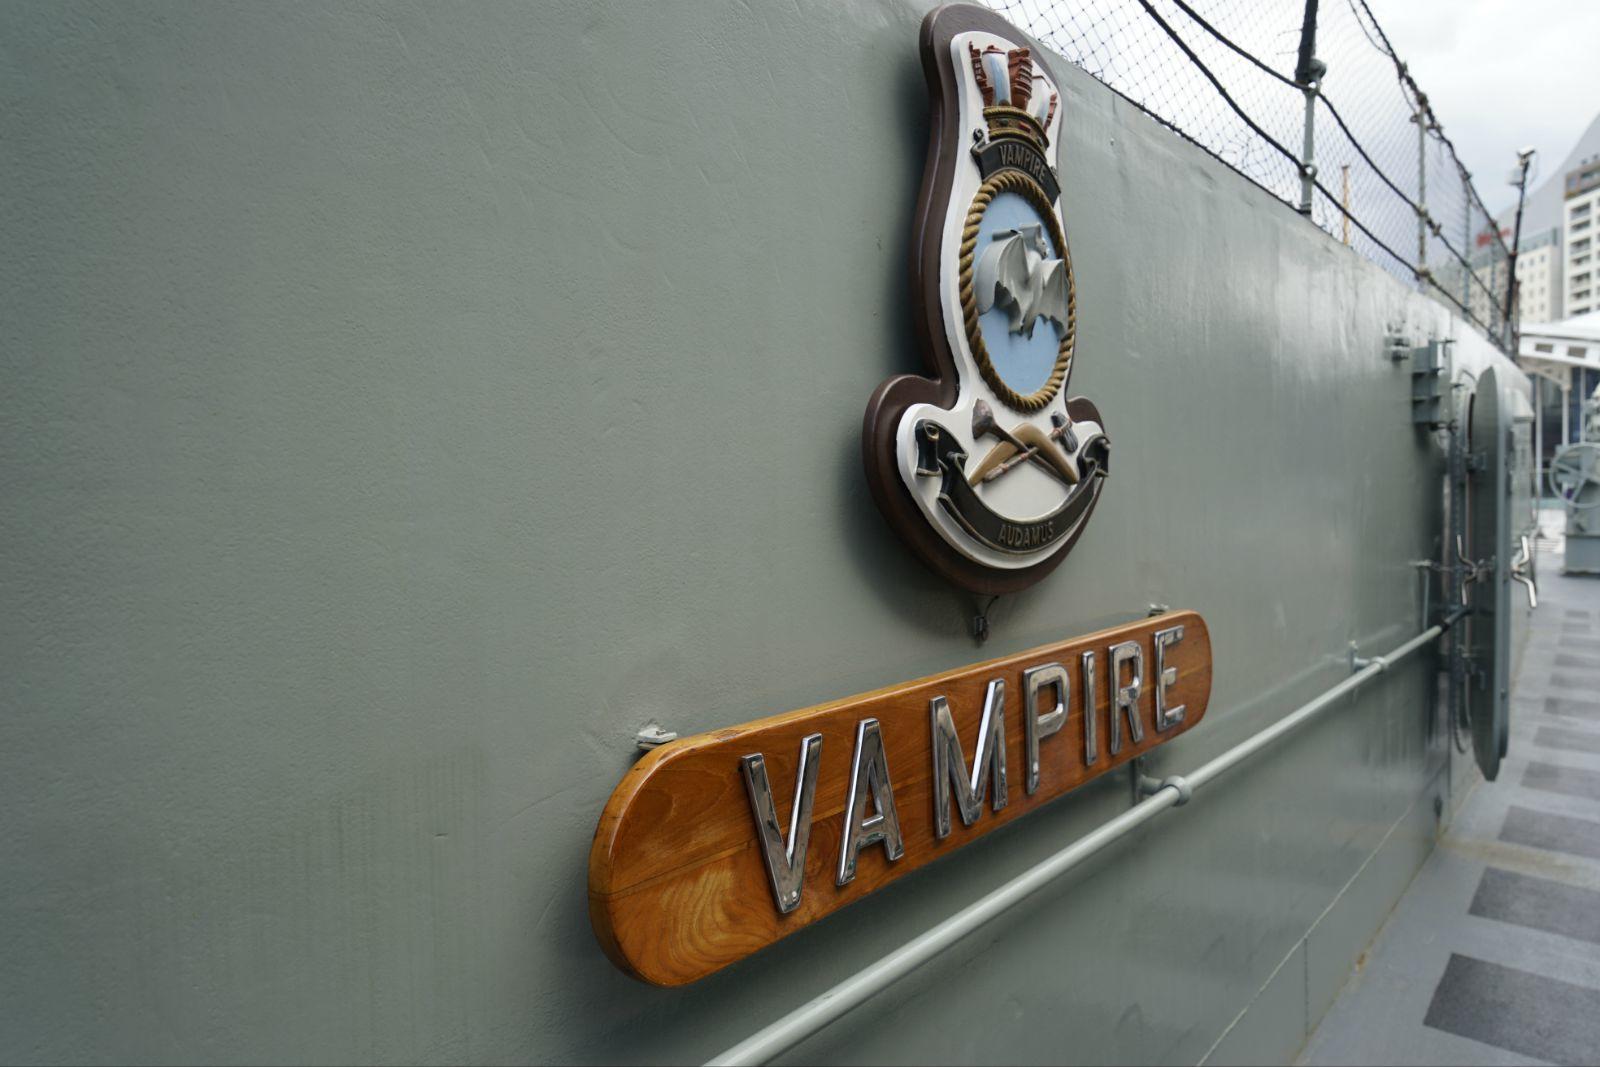 在情人港有一个海军博物馆,我们也去参观了一下,挺不错的,不过潜艇不让进了,有点遗憾.